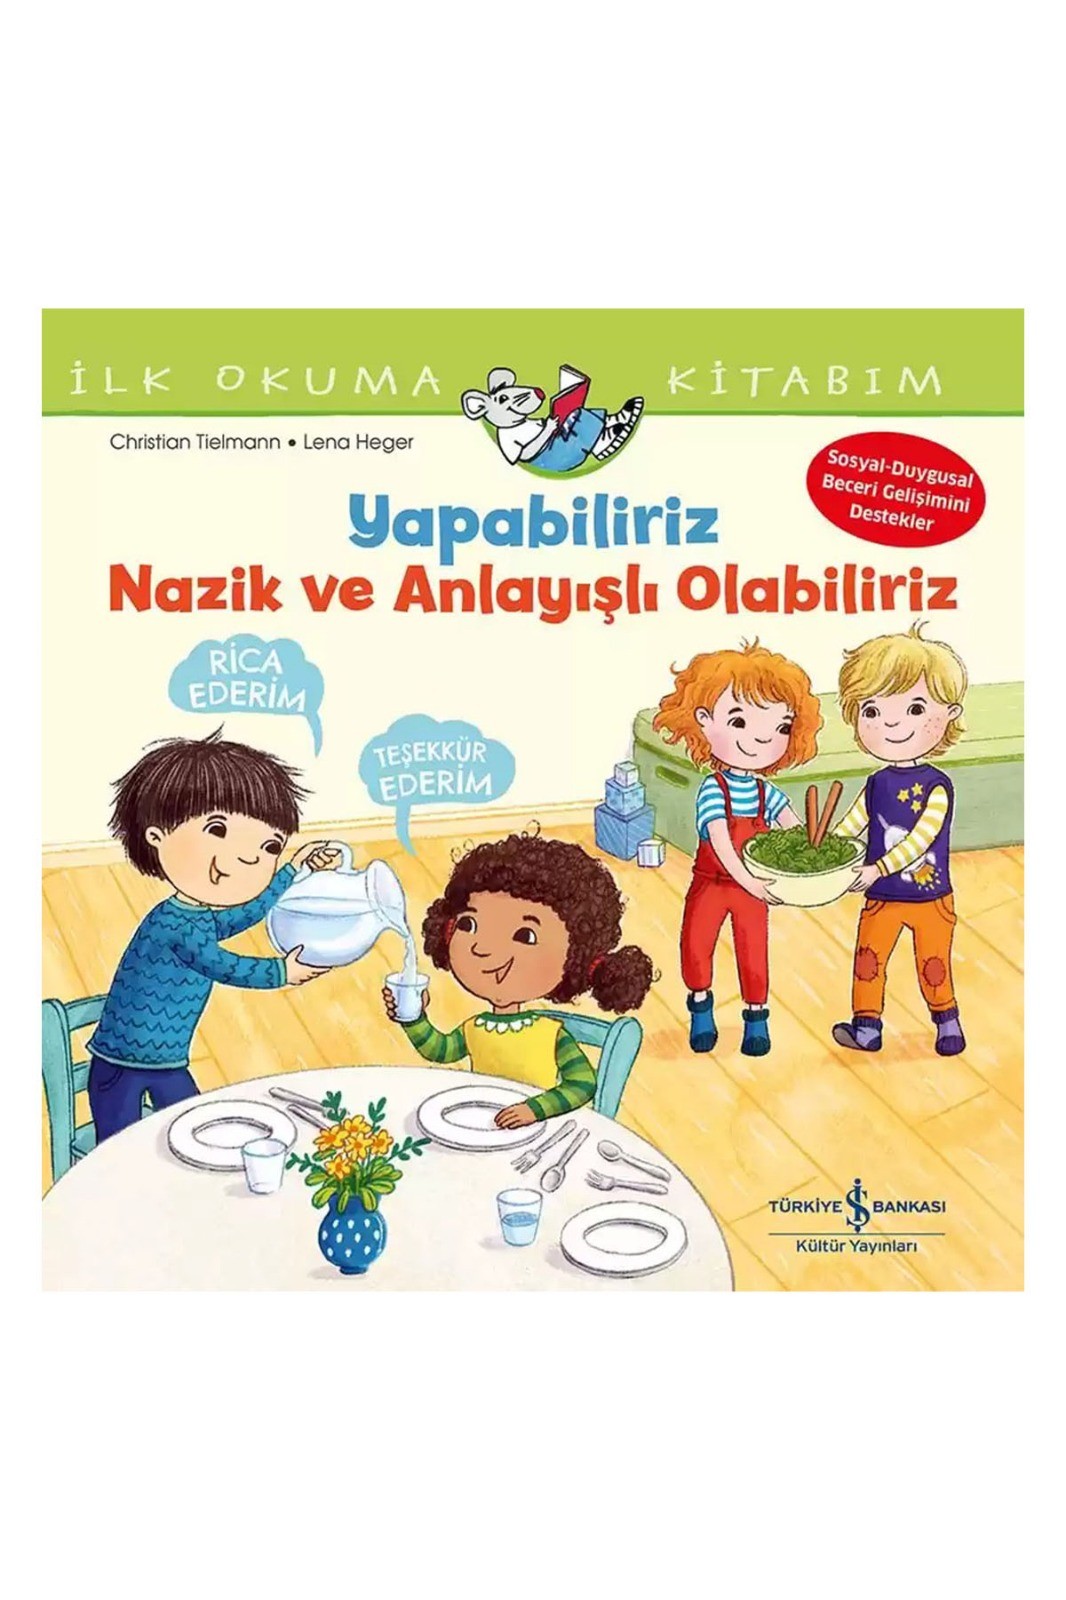 Türkiye İş Bankası Kültür Yayınları Yapabiliriz, Nazik ve Anlayışlı Olabiliriz – İlk Okuma Kitabım